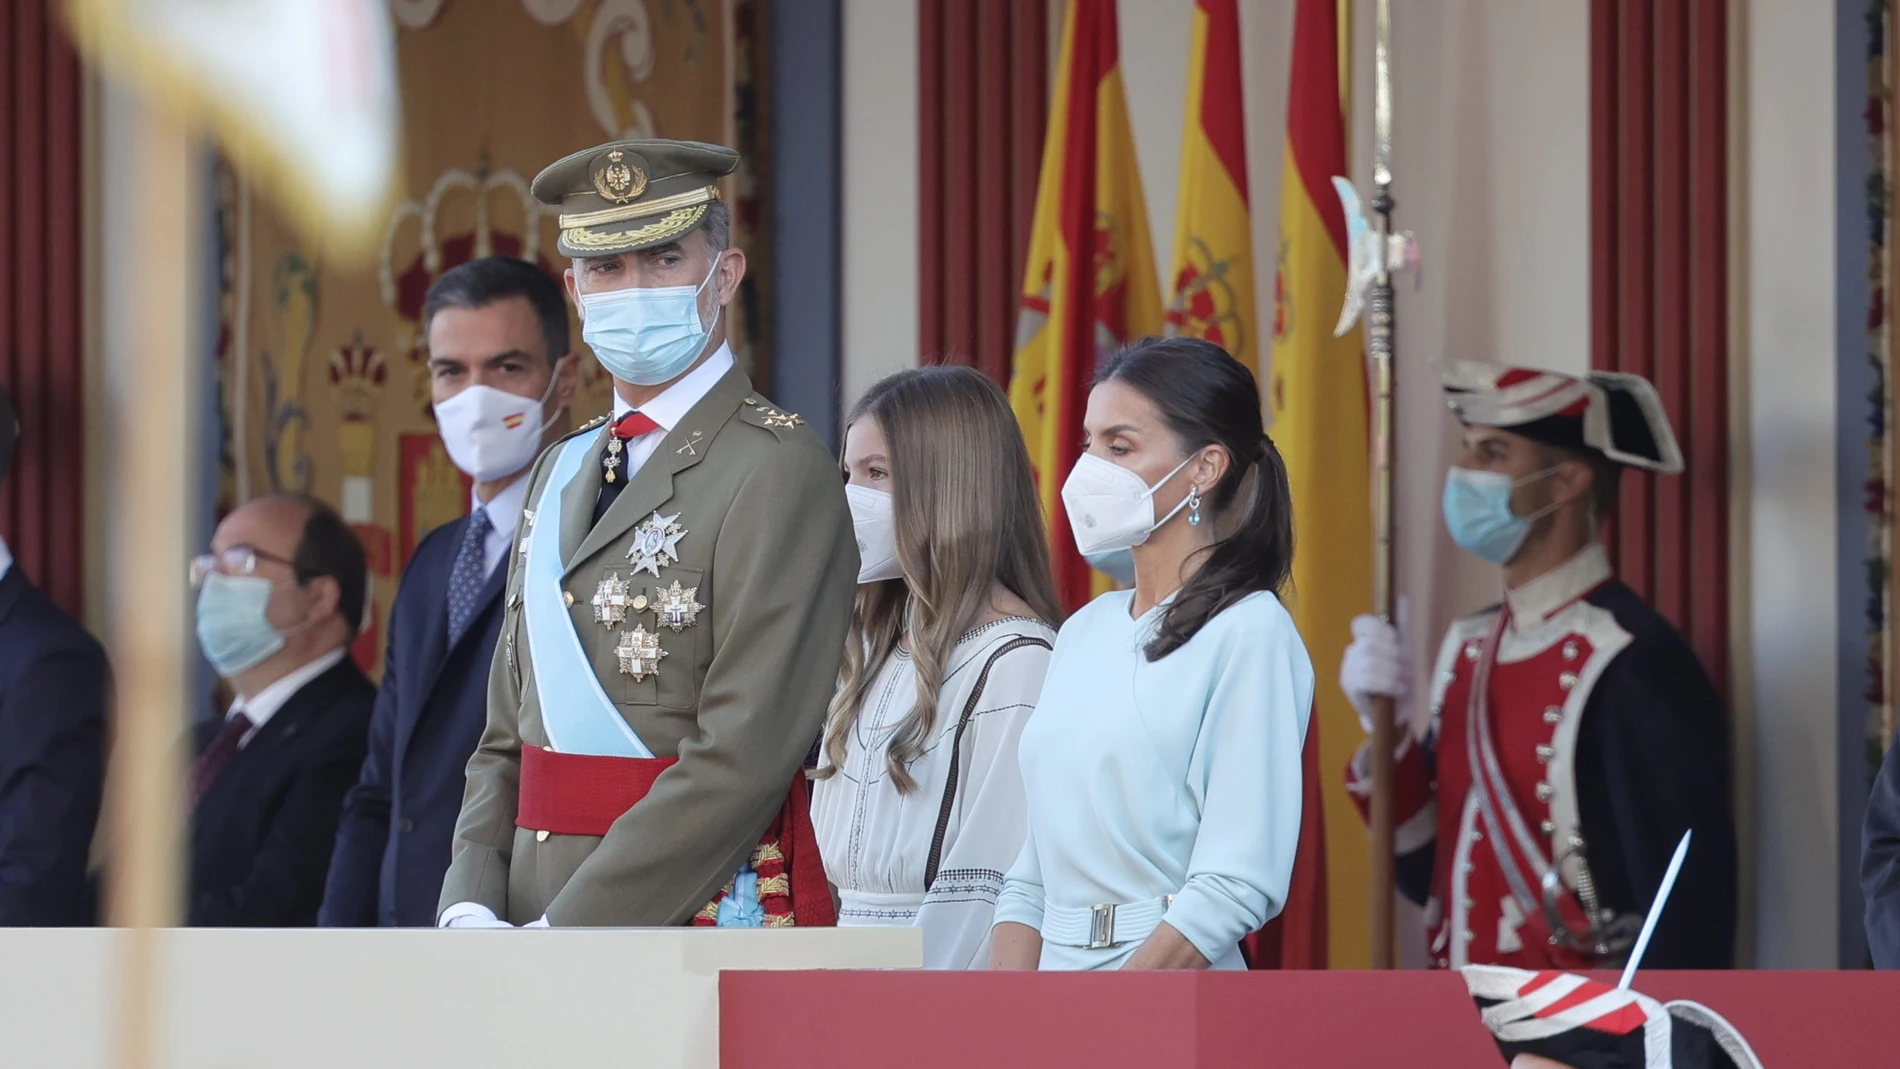 (I-D) El ministro de Deporte y Cultura, Miquel Iceta; el presidente del Gobierno, Pedro Sánchez; el rey Felipe VI; la infanta Sofía; y la reina Letizia, durante el acto solemne de homenaje a la bandera nacional